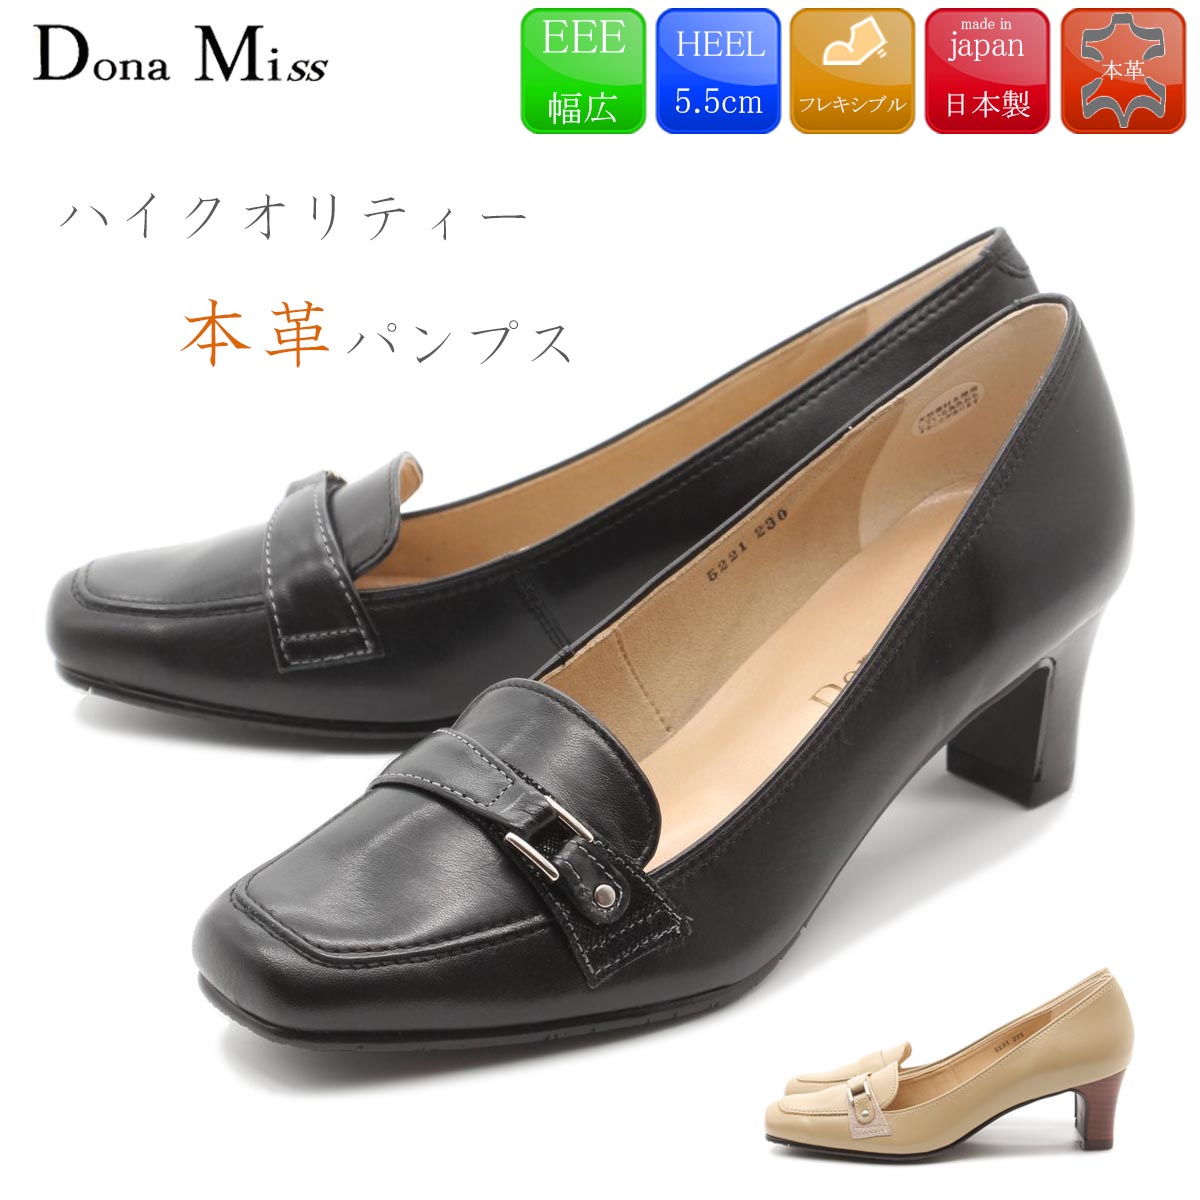 Dona Miss ドナミス パンプス 本革 日本製 レザーパンプス ベルト 痛くない 5.5cm 走れる レディース 柔らかい 黒 靴 41-5221